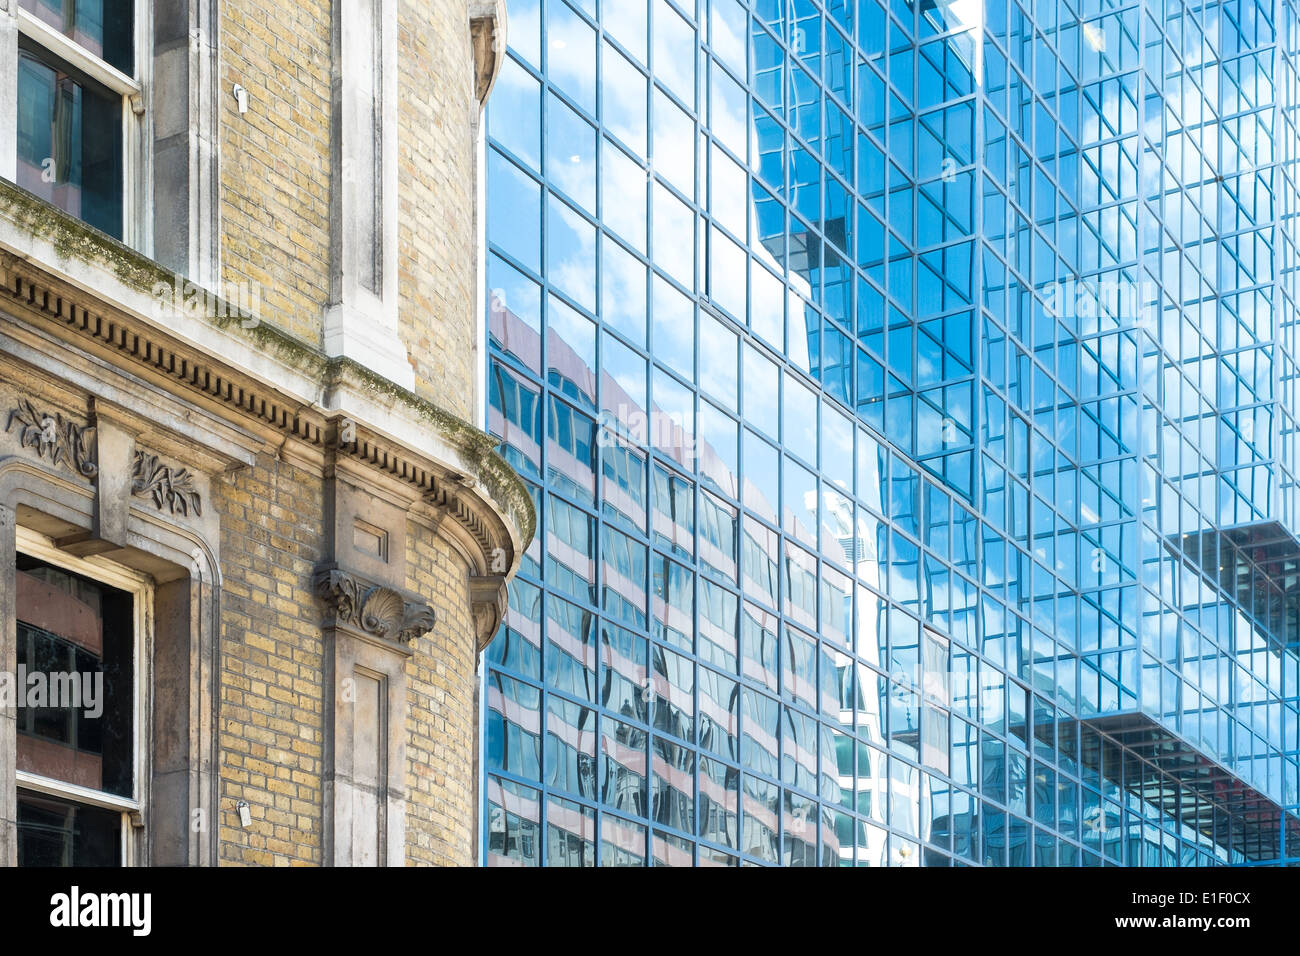 Fotografía del contraste entre la vieja y nueva arquitectura londinense. Foto de stock